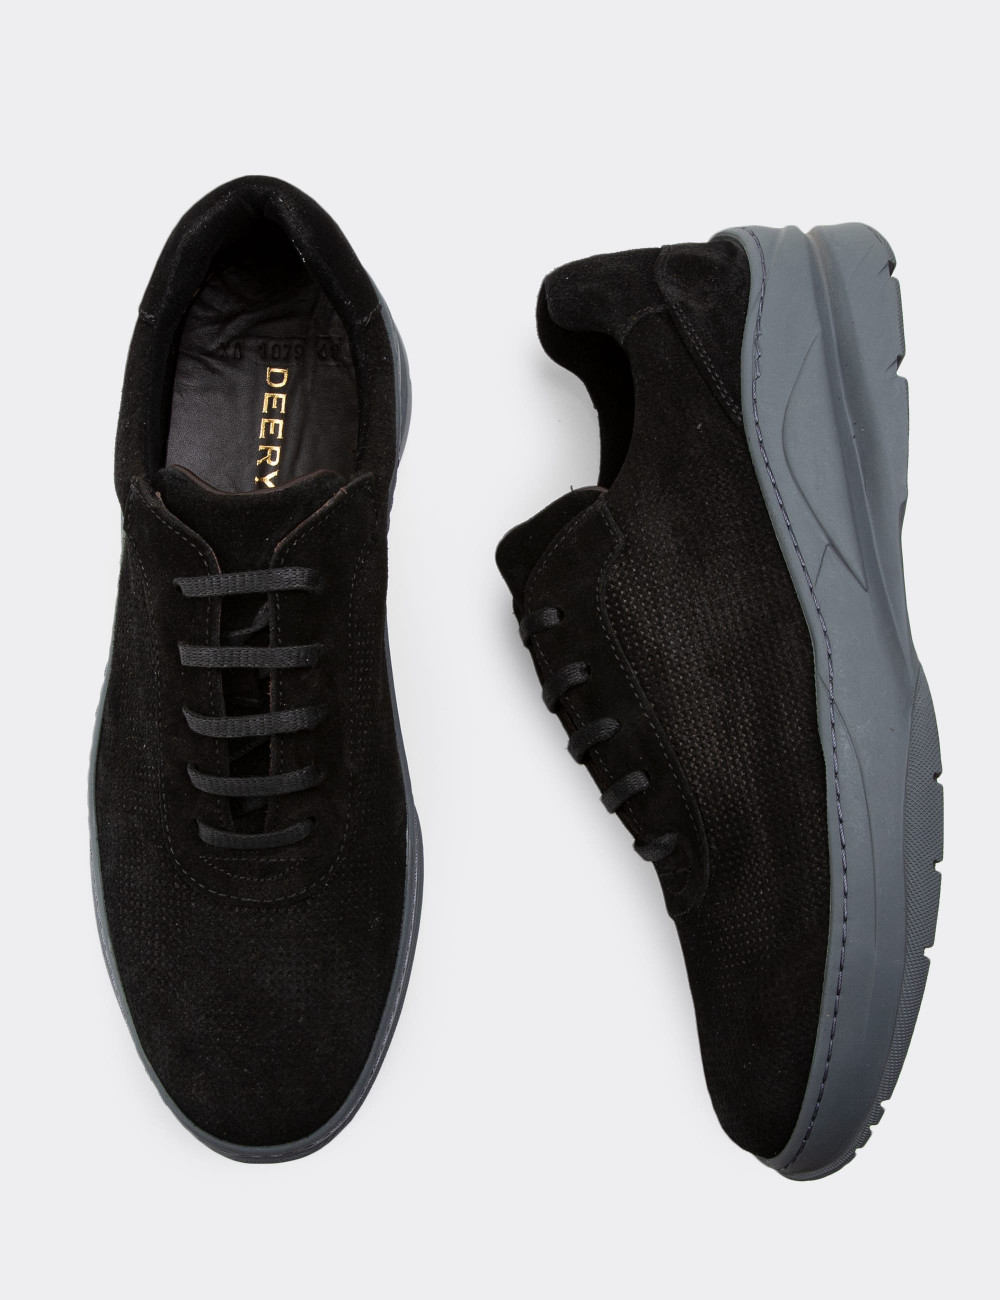 Hakiki Süet Siyah Sneaker Erkek Ayakkabı - 01879MSYHC02